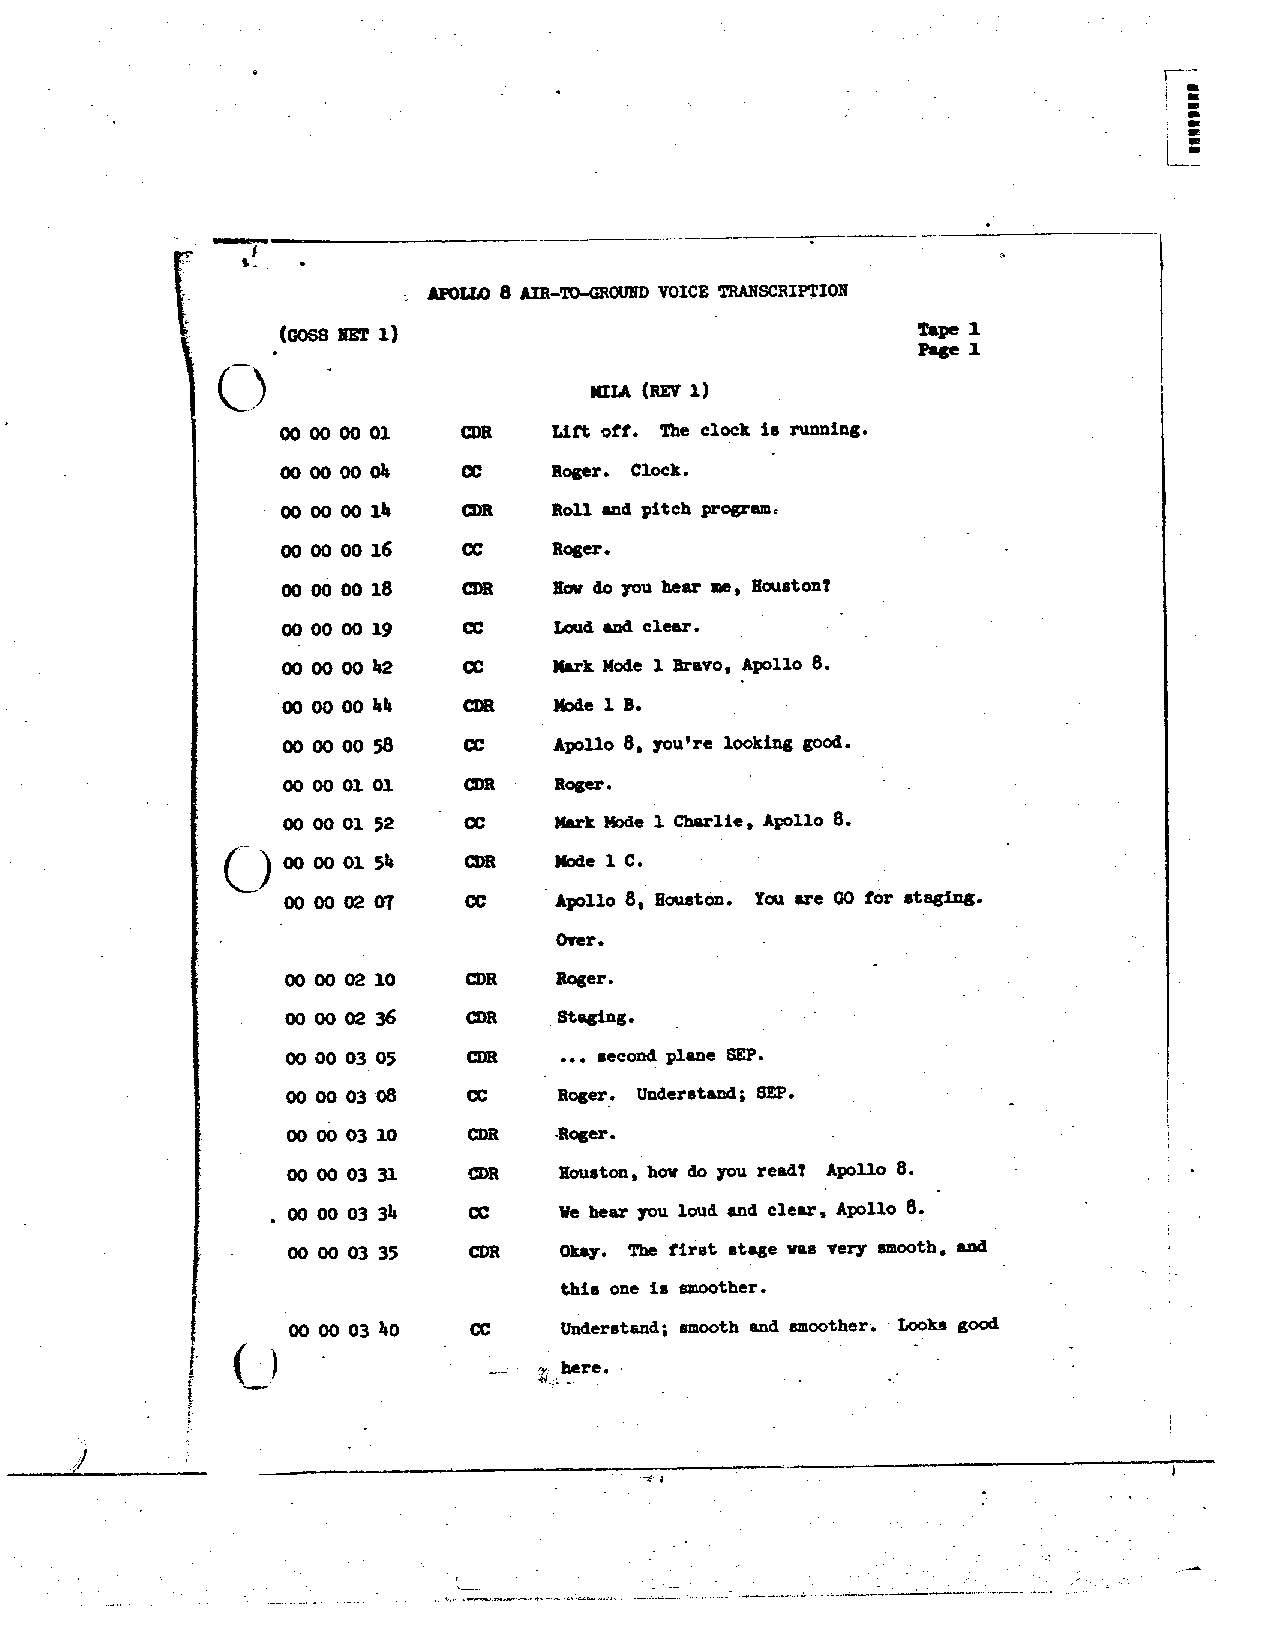 Page 3 of Apollo 8’s original transcript